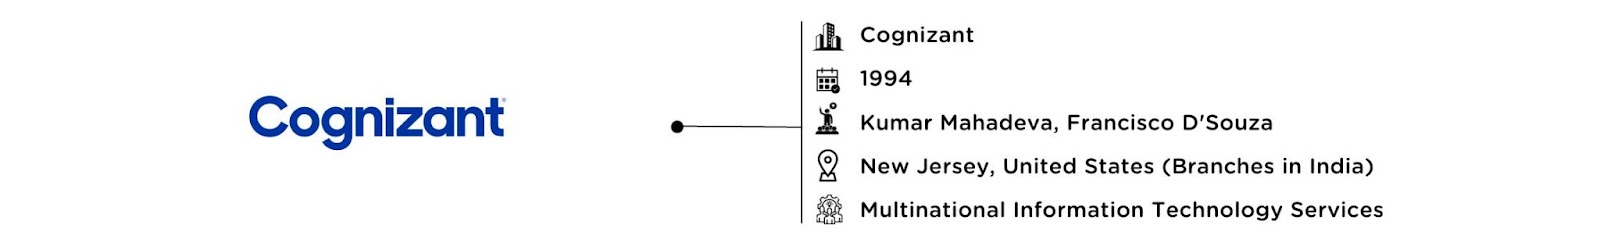 Cognizant: Software Development Company in India